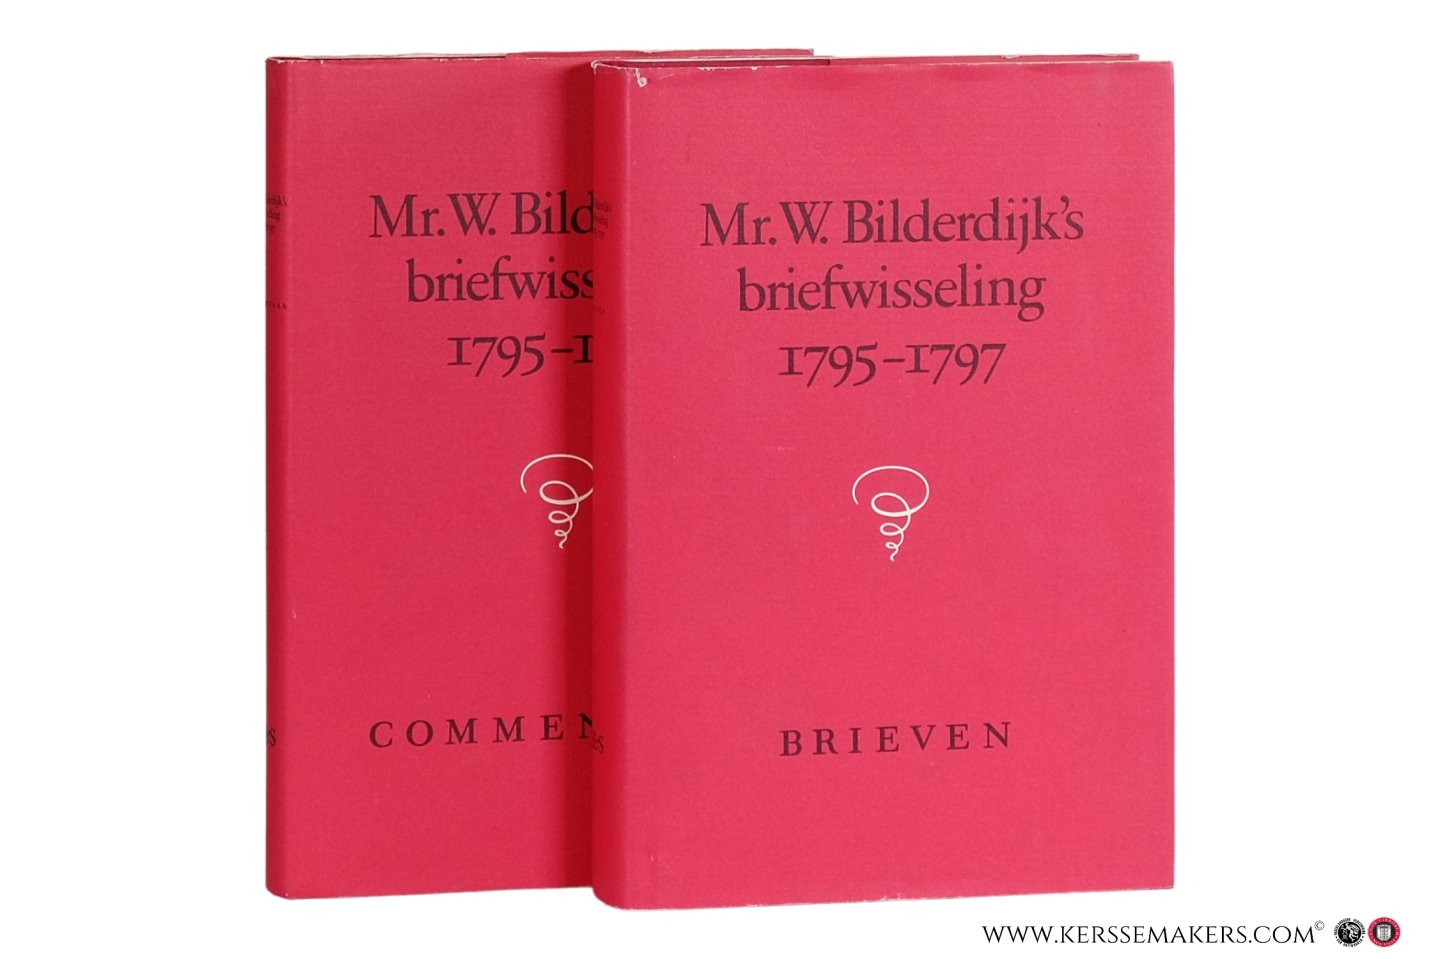 Bilderdijk, W. - Mr. W. Bilderdijk's briefwisseling 1795-1797. Uitgegeven door J. Bosch, H.W. Groenevelt en M. van Hattum [compleet in 2 delen / complete in 2 volumes].